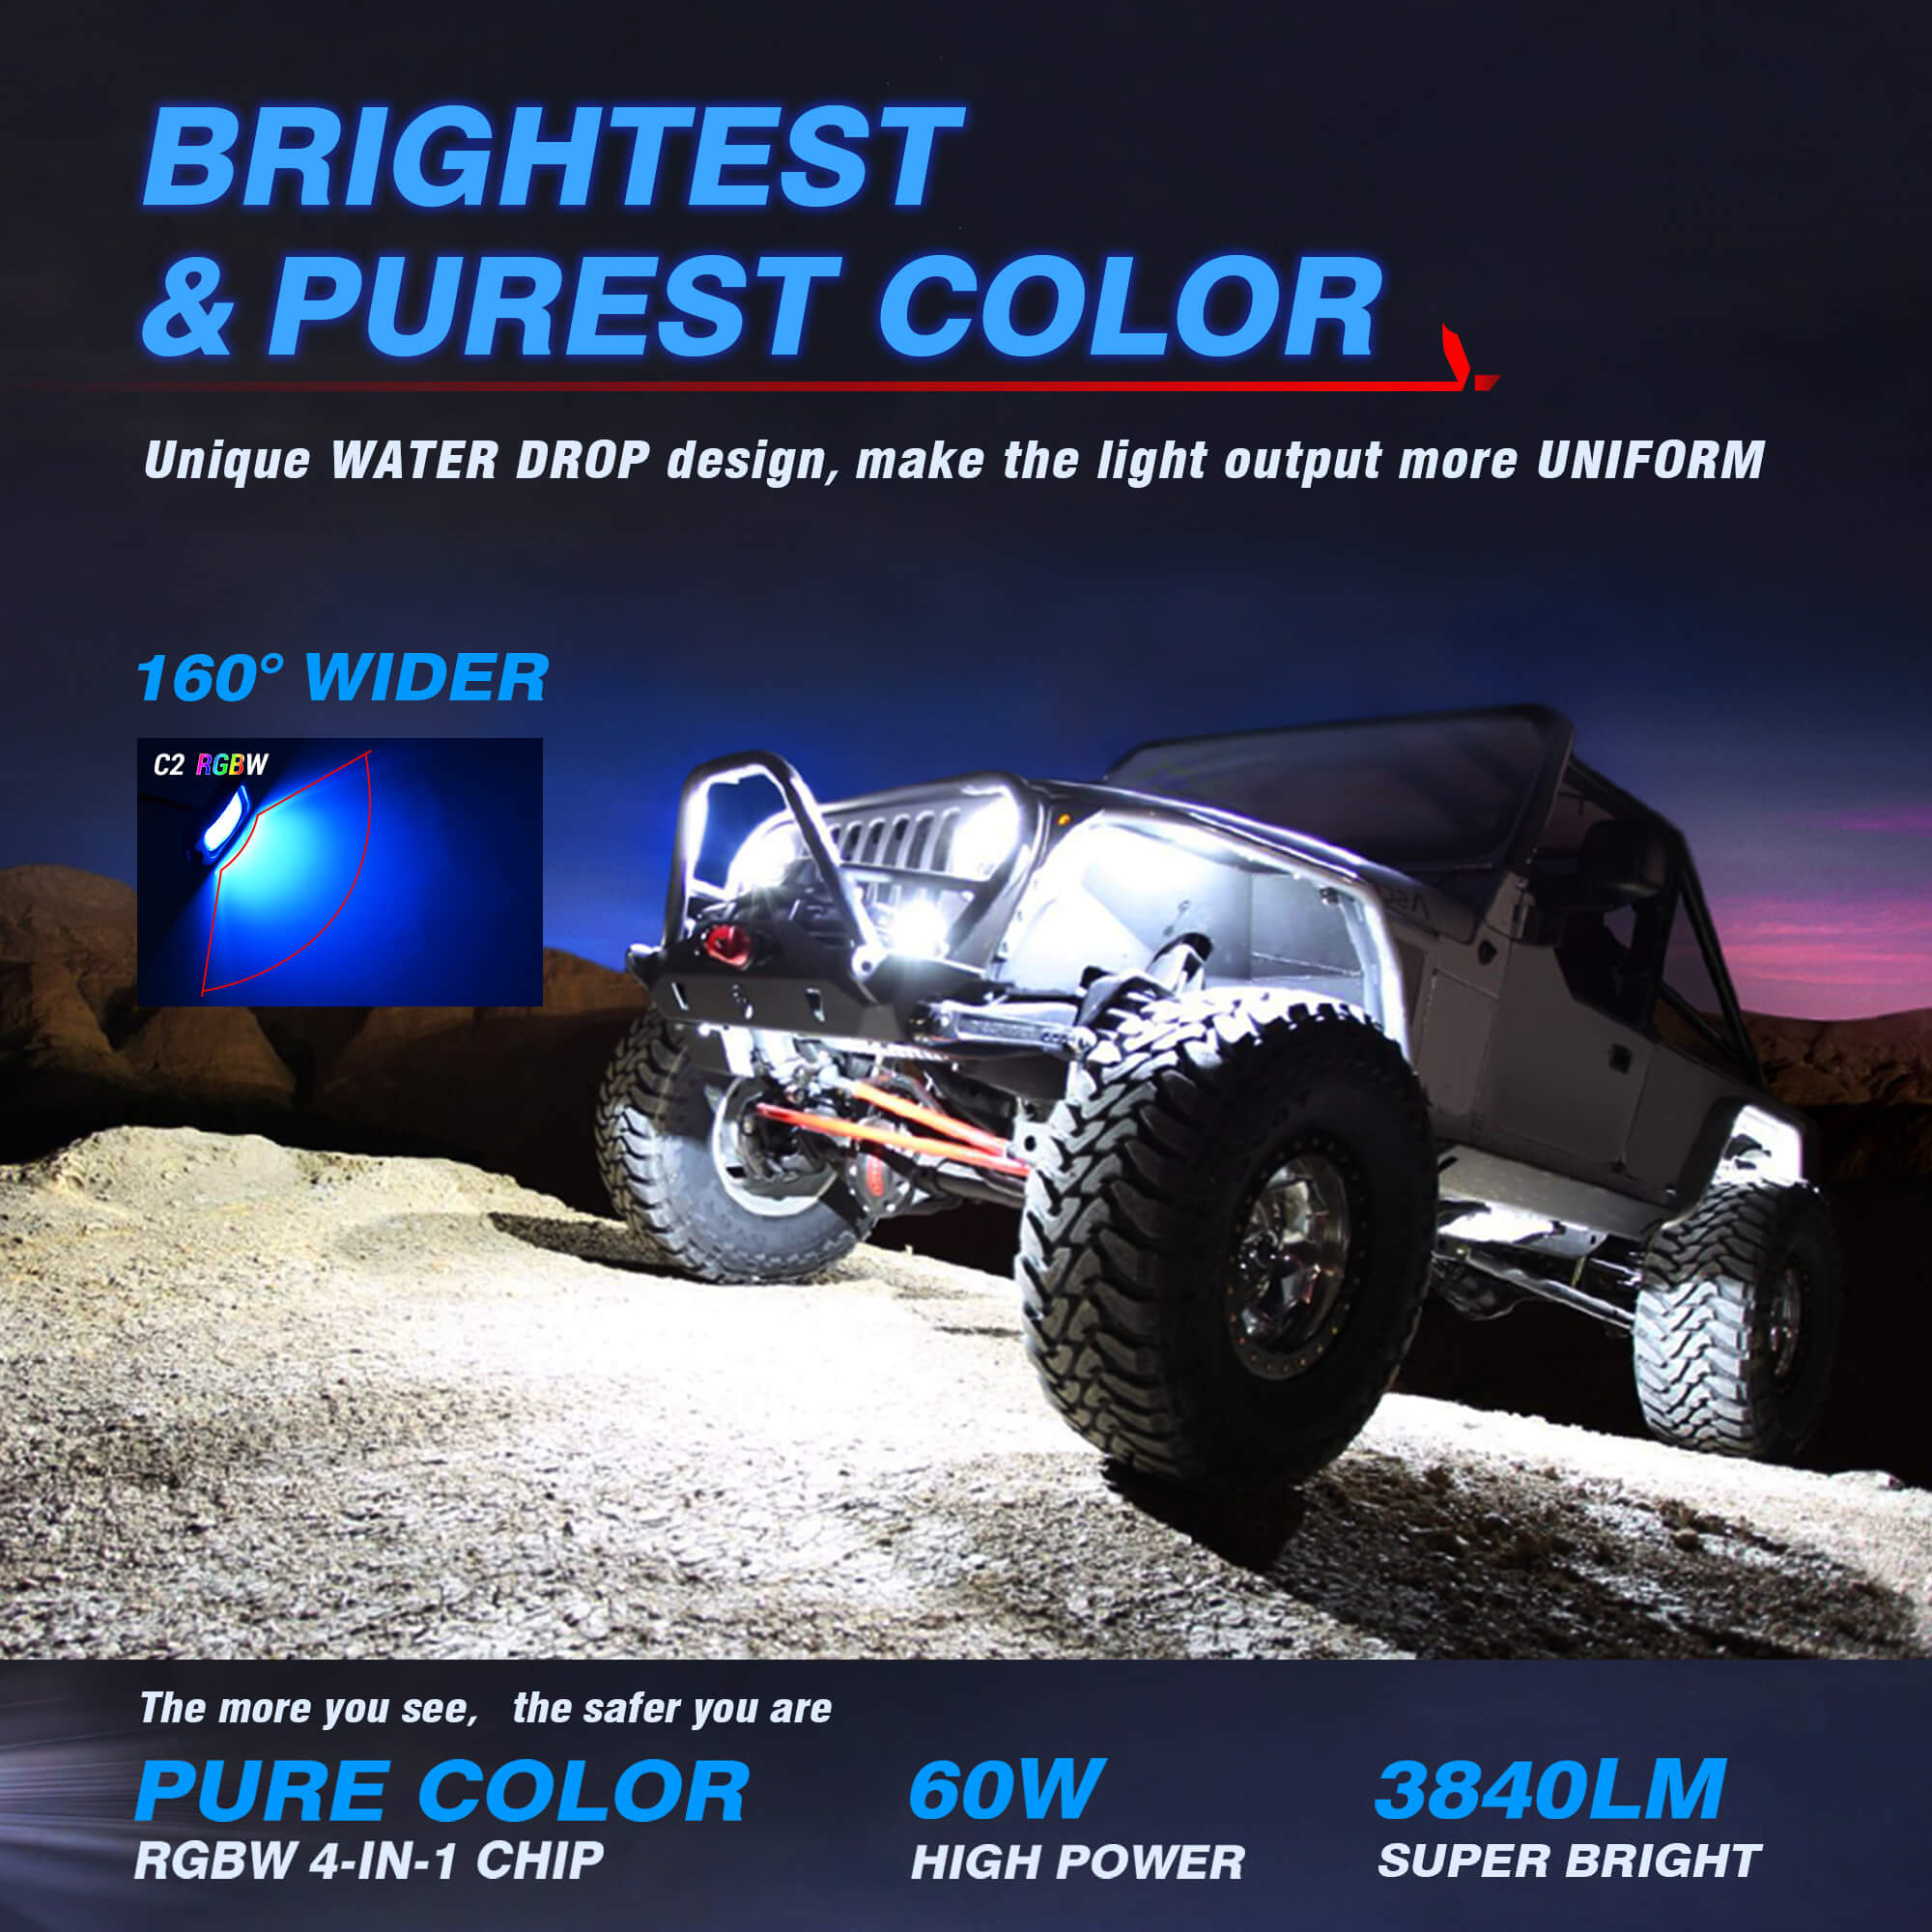 C2 RGBW LED Rock Lights - 12 Pods Multicolor Neon LED Light Kit